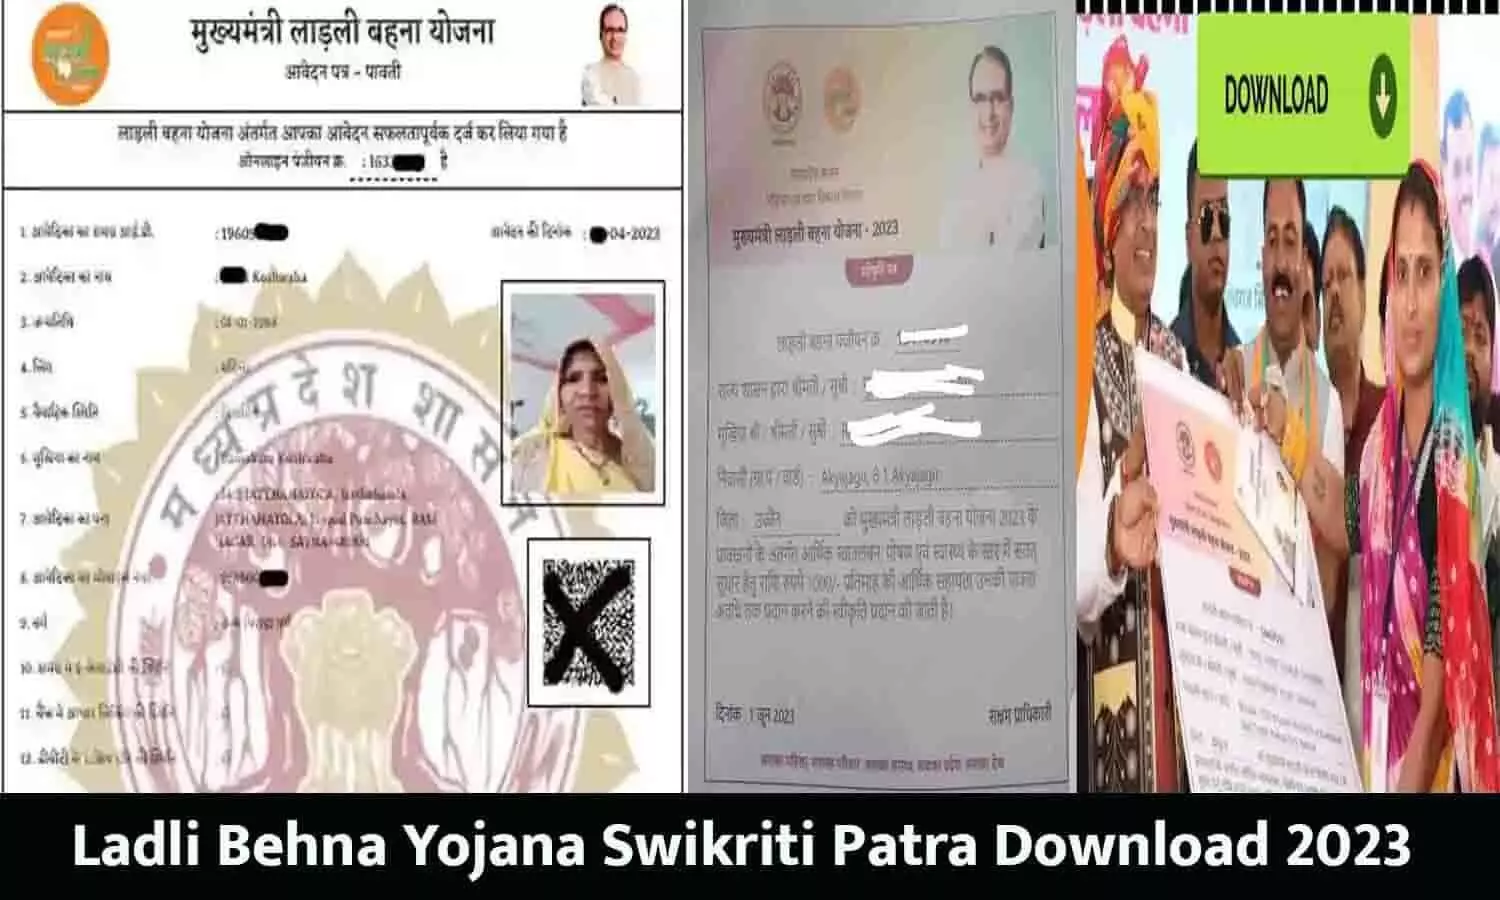 Ladli Behna Yojana Swikriti Patra Download: ₹1000 अकाउंट में आने के बाद लाडली बहना योजना में स्वीकृति पत्र डाउनलोड कैसे करें 2023